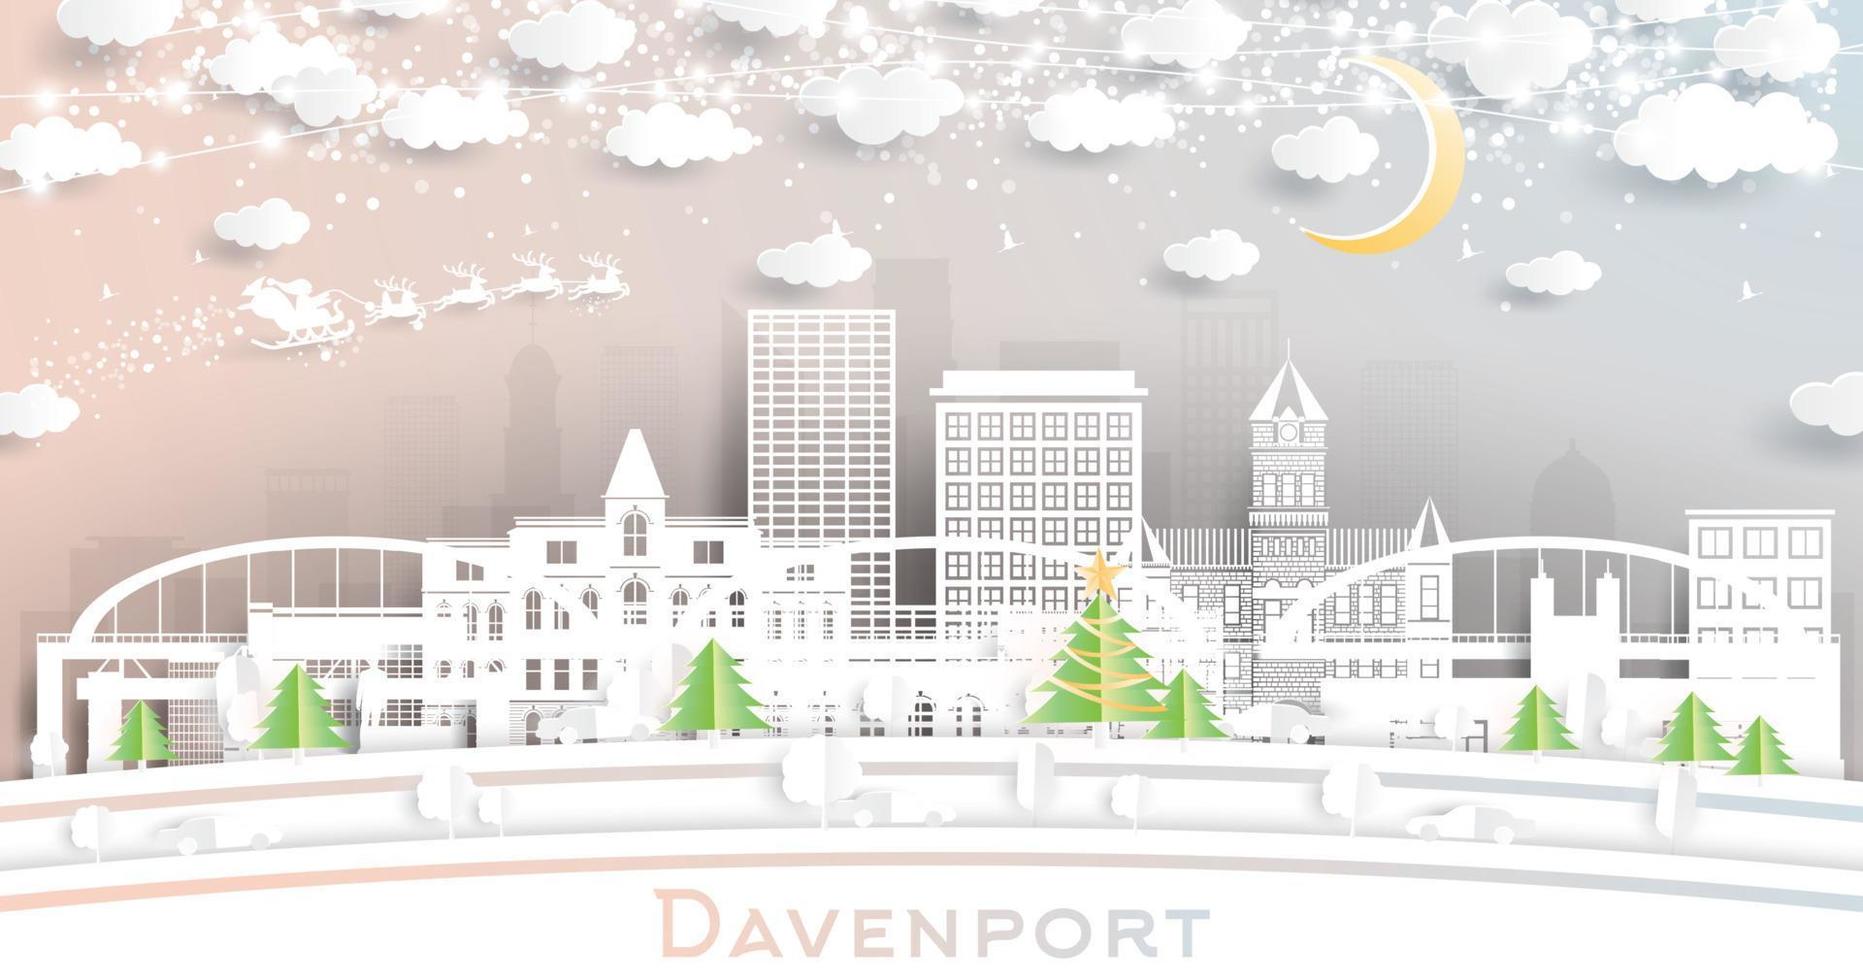 davenport iowa stad horisont i papper skära stil med snöflingor, måne och neon krans. vektor